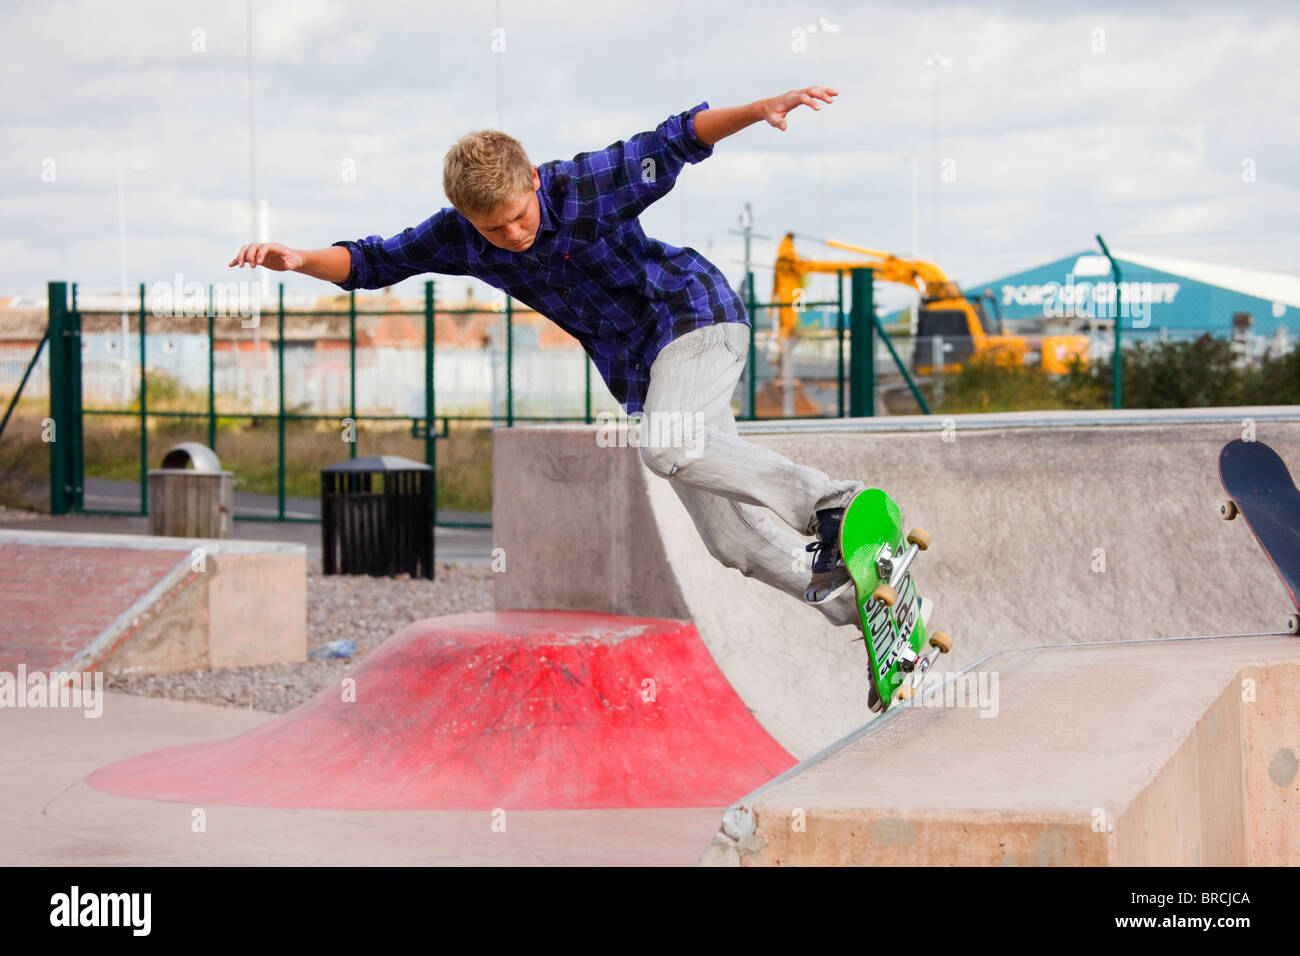 Teenage boy skateboarding en Skate Plaza nouveau parc de skate. Barrage de Cardiff Bay Park, Cardiff, Glamorgan, Pays de Galles, Royaume-Uni, Angleterre Banque D'Images